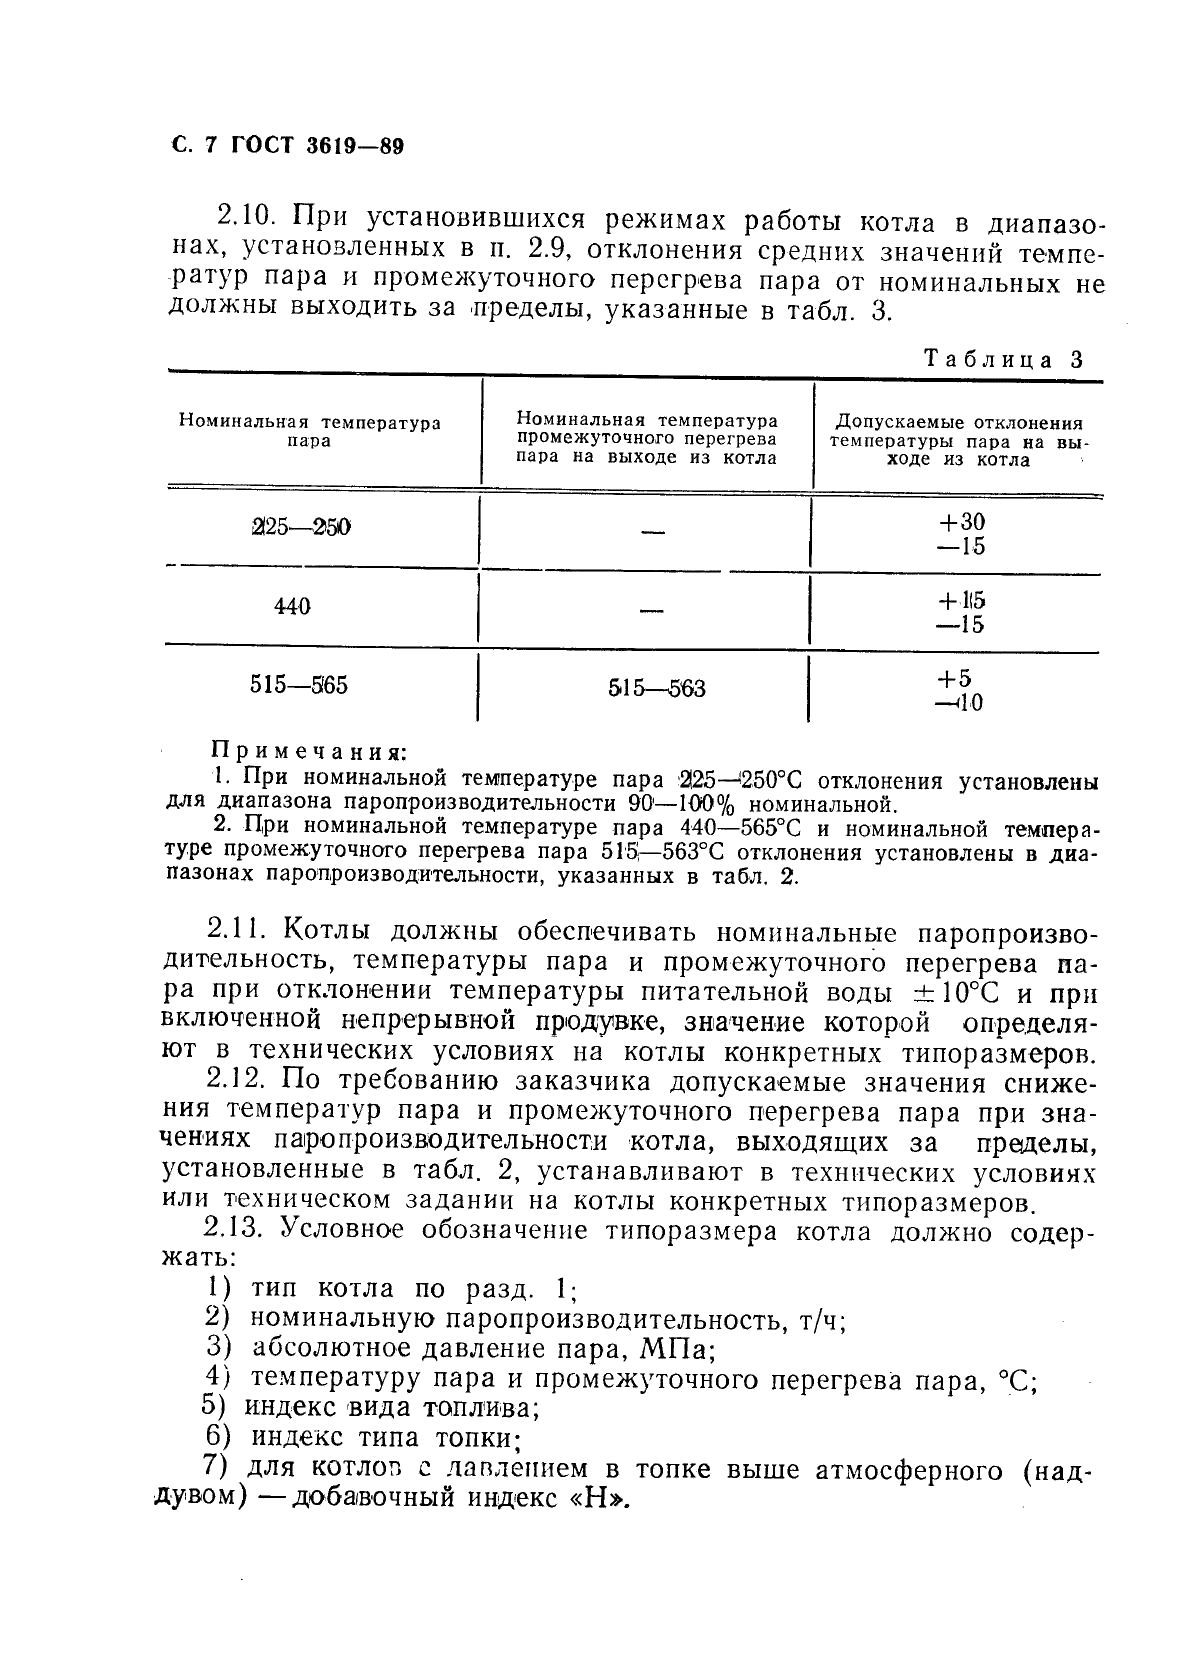 ГОСТ 3619-89 Котлы паровые стационарные. Типы и основные параметры (фото 8 из 12)